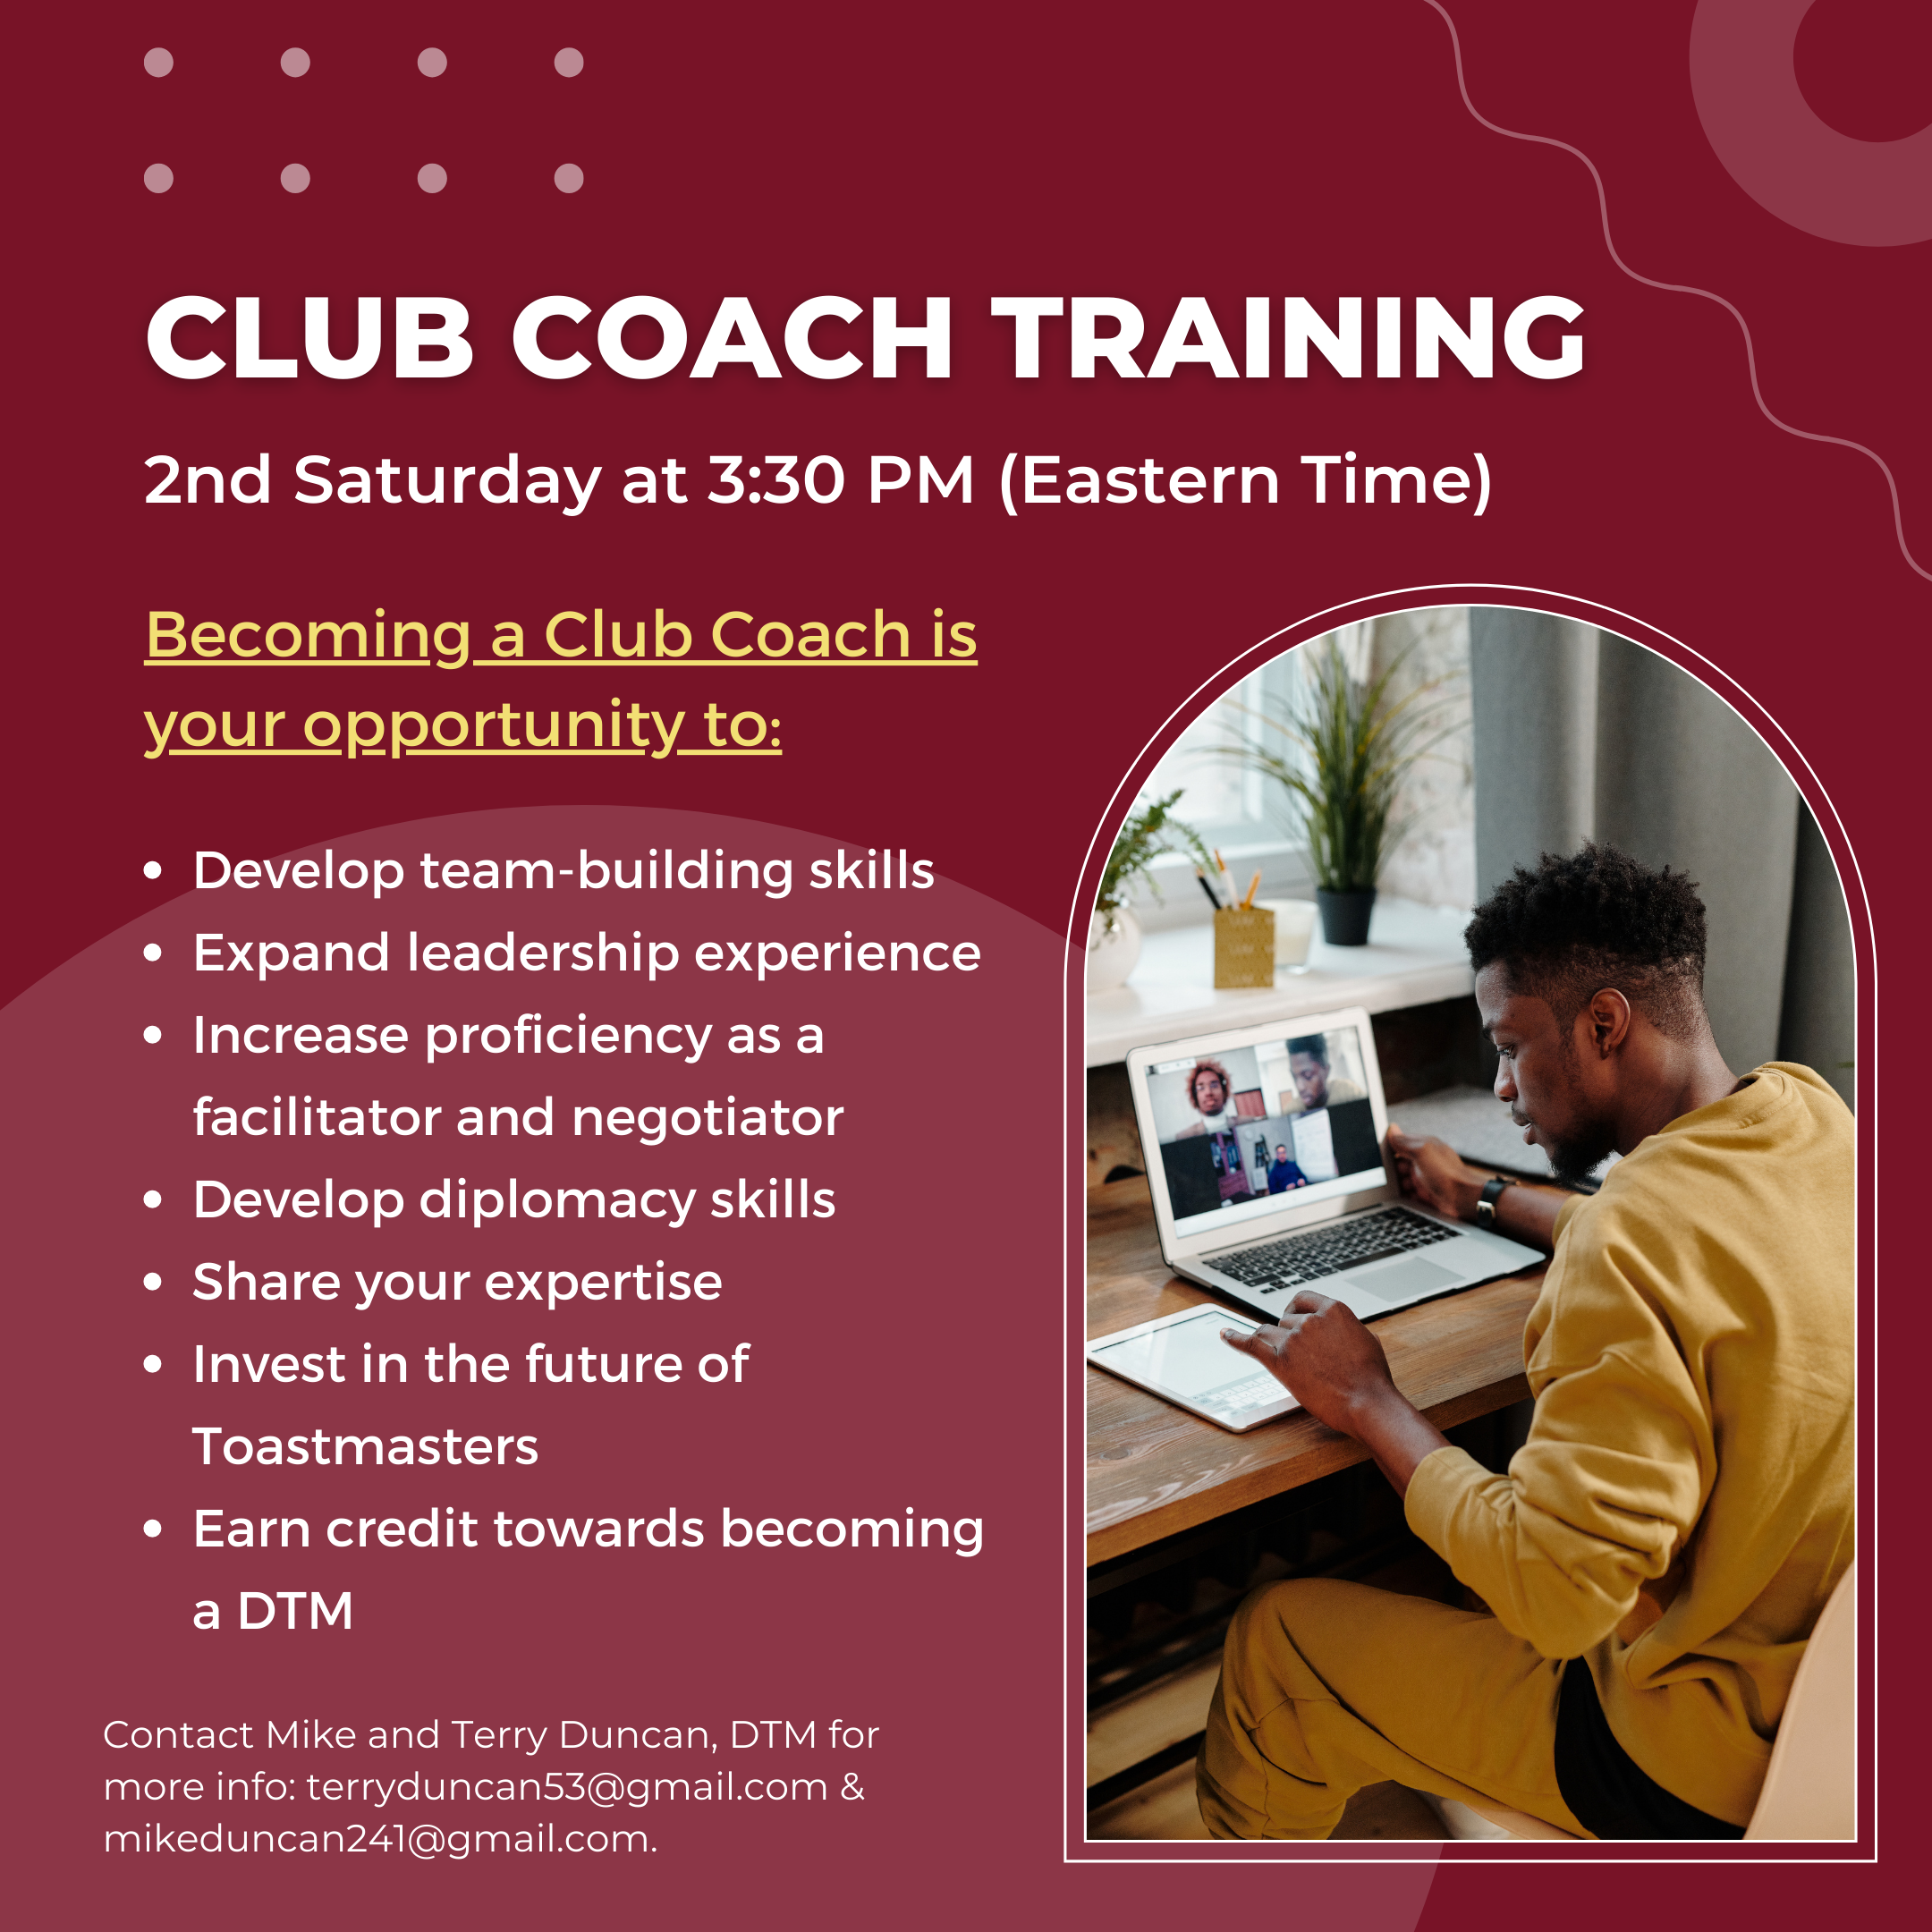 Club Coach Training